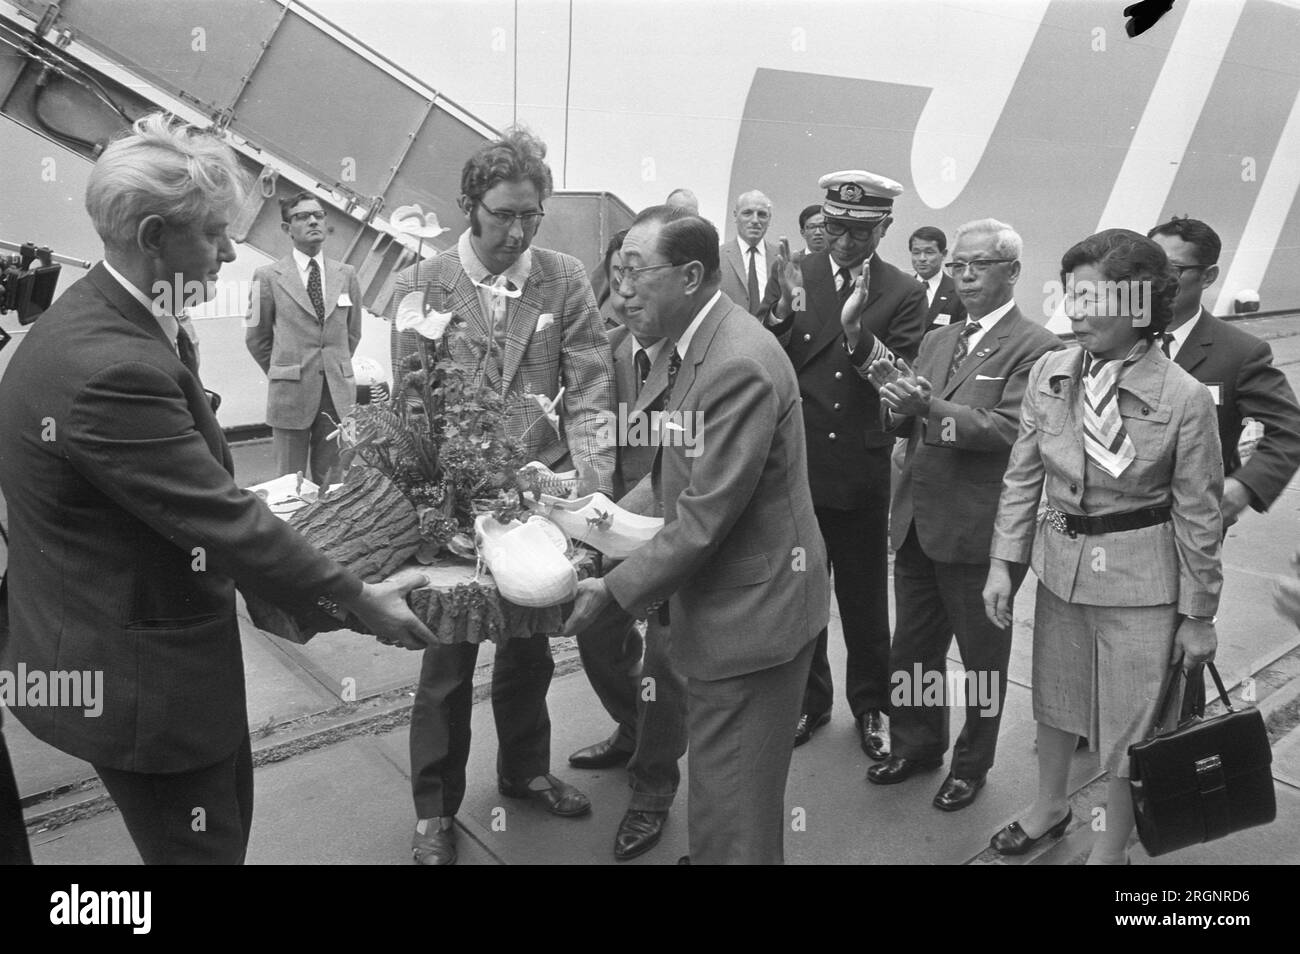 Navire d'exposition japonais Shin Sakura Maru à Amsterdam, l'équipage et le personnel des relations publiques reçoivent un panier de fromage et de sabots ; ca. Août 1972 Banque D'Images